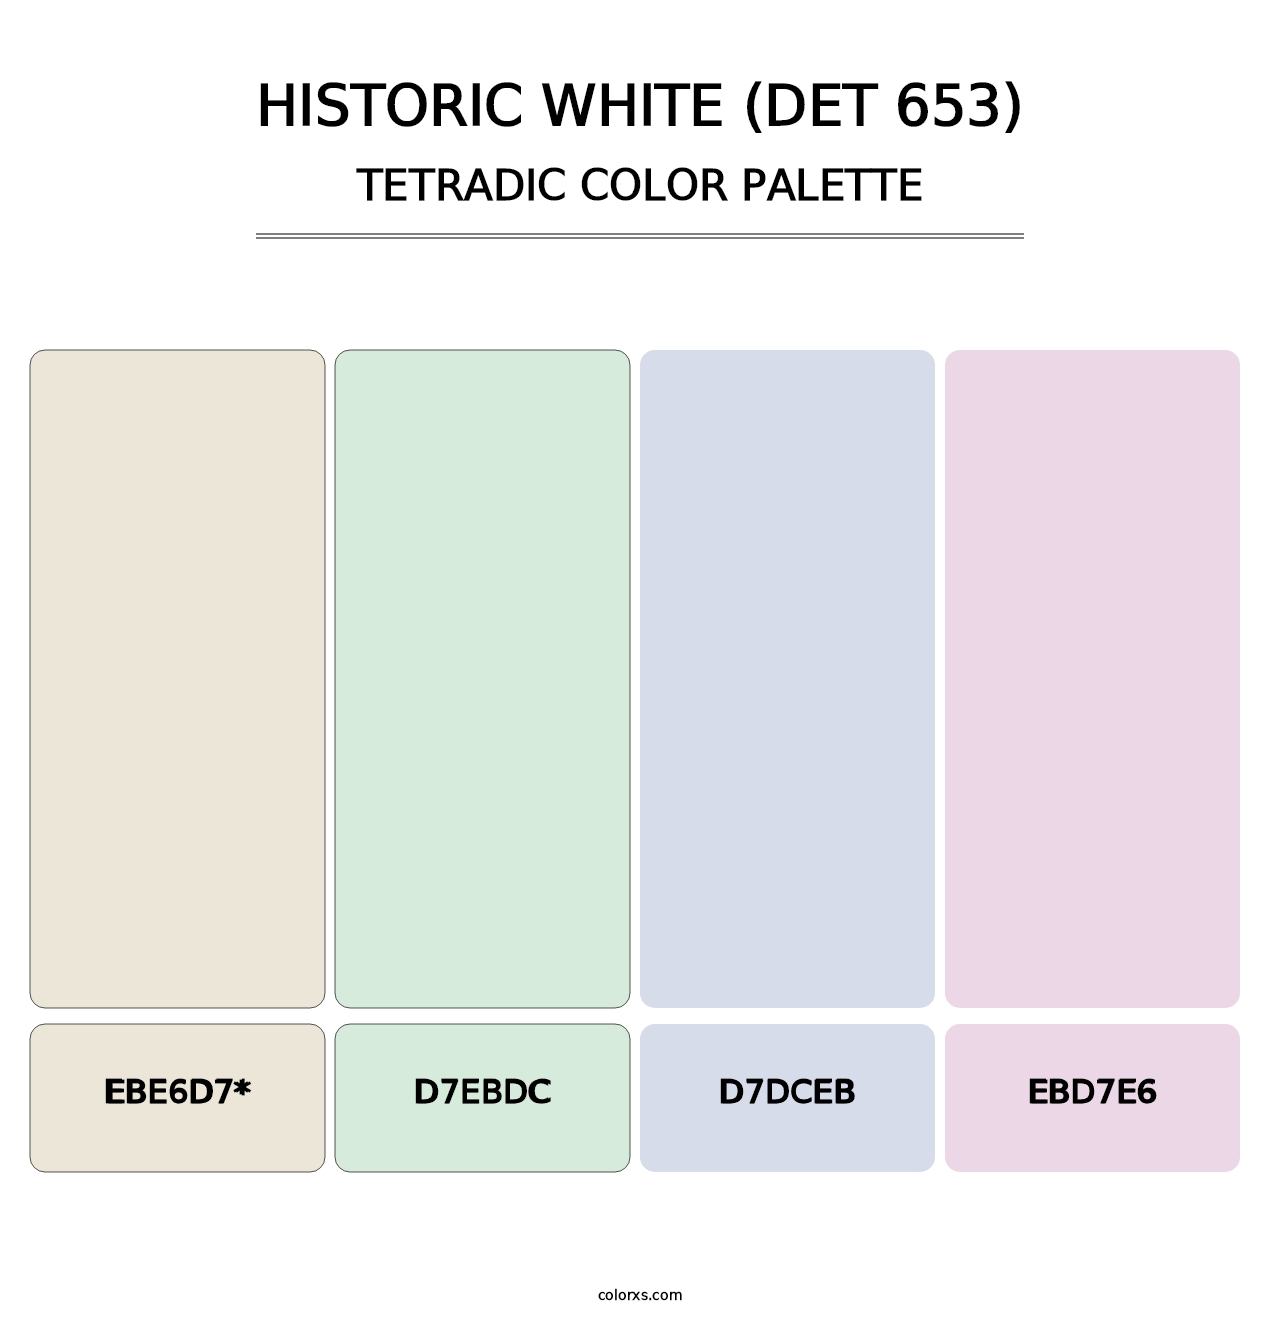 Historic White (DET 653) - Tetradic Color Palette